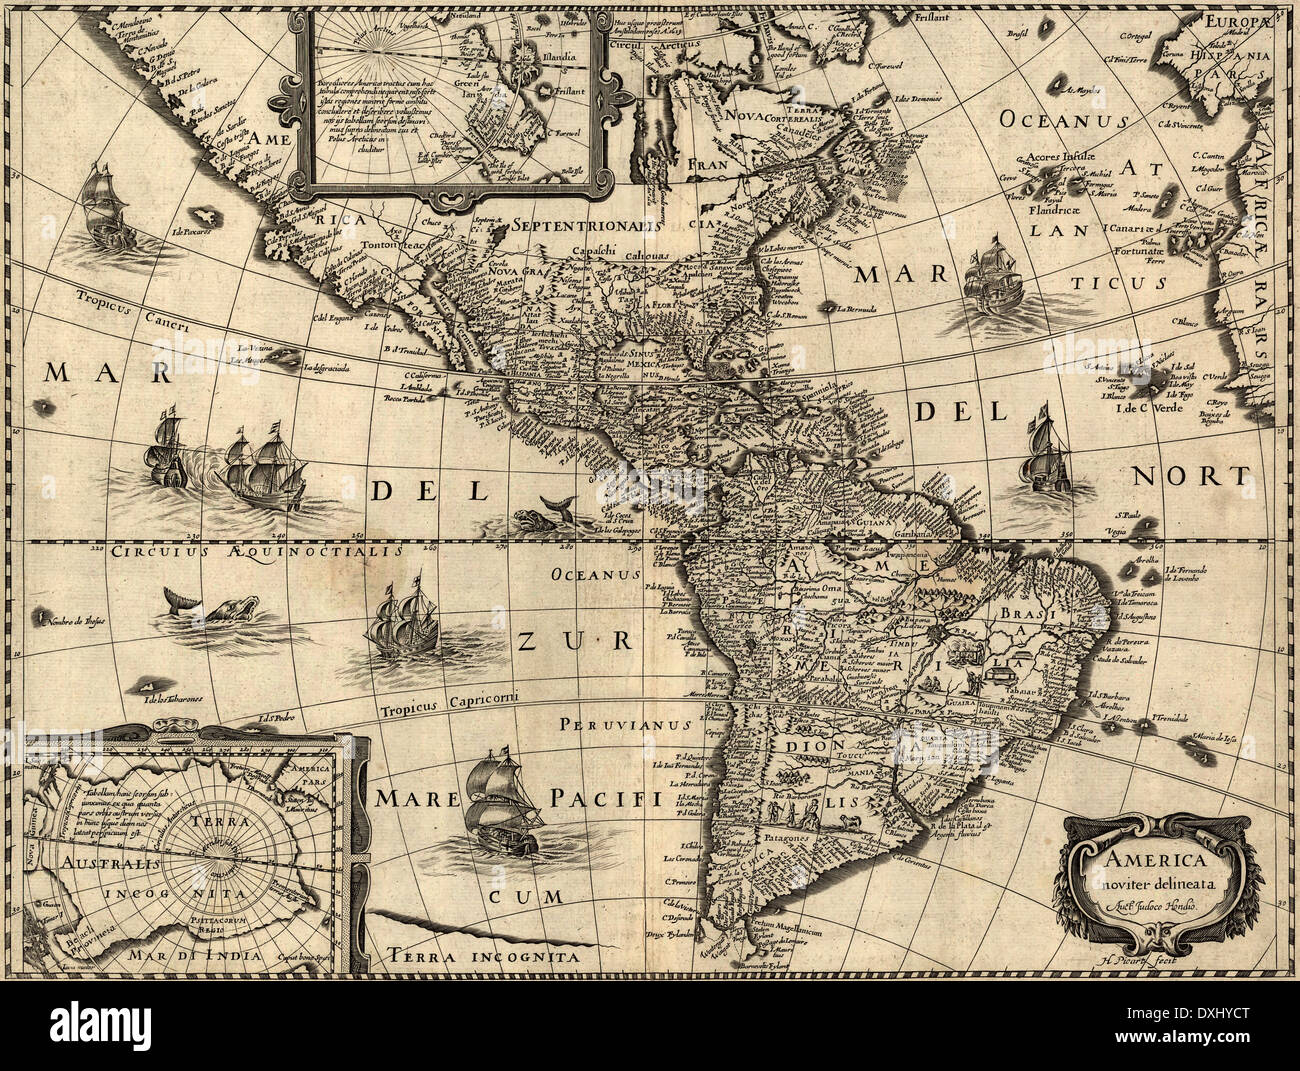 America noviter delineata America's appena delineato mappa 1640 Foto Stock